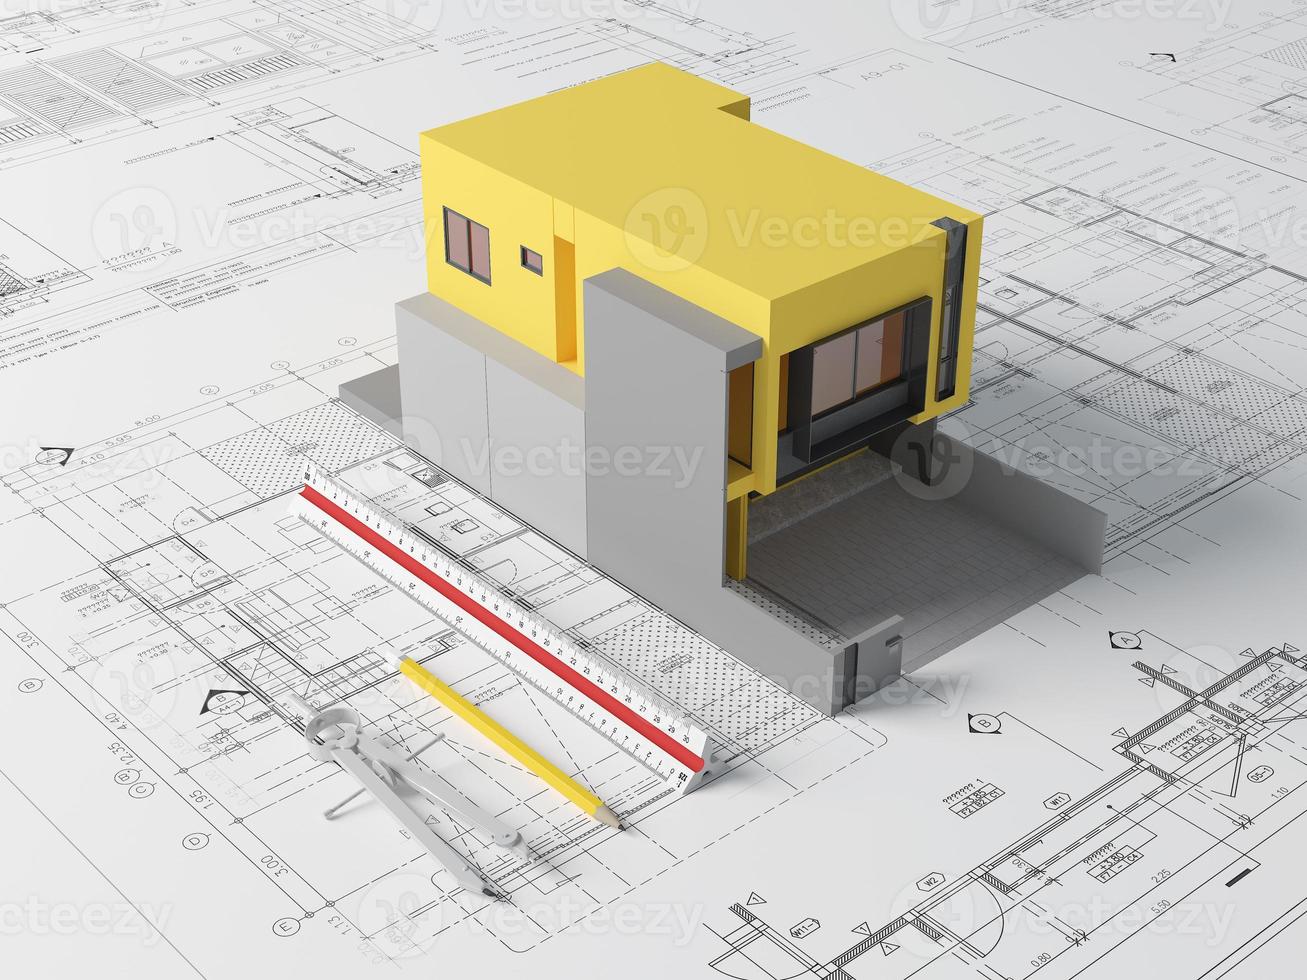 piani di progetto e modello di casa gialla con righello in scala, bussola e matita.concetto di architetto.rendering 3d foto